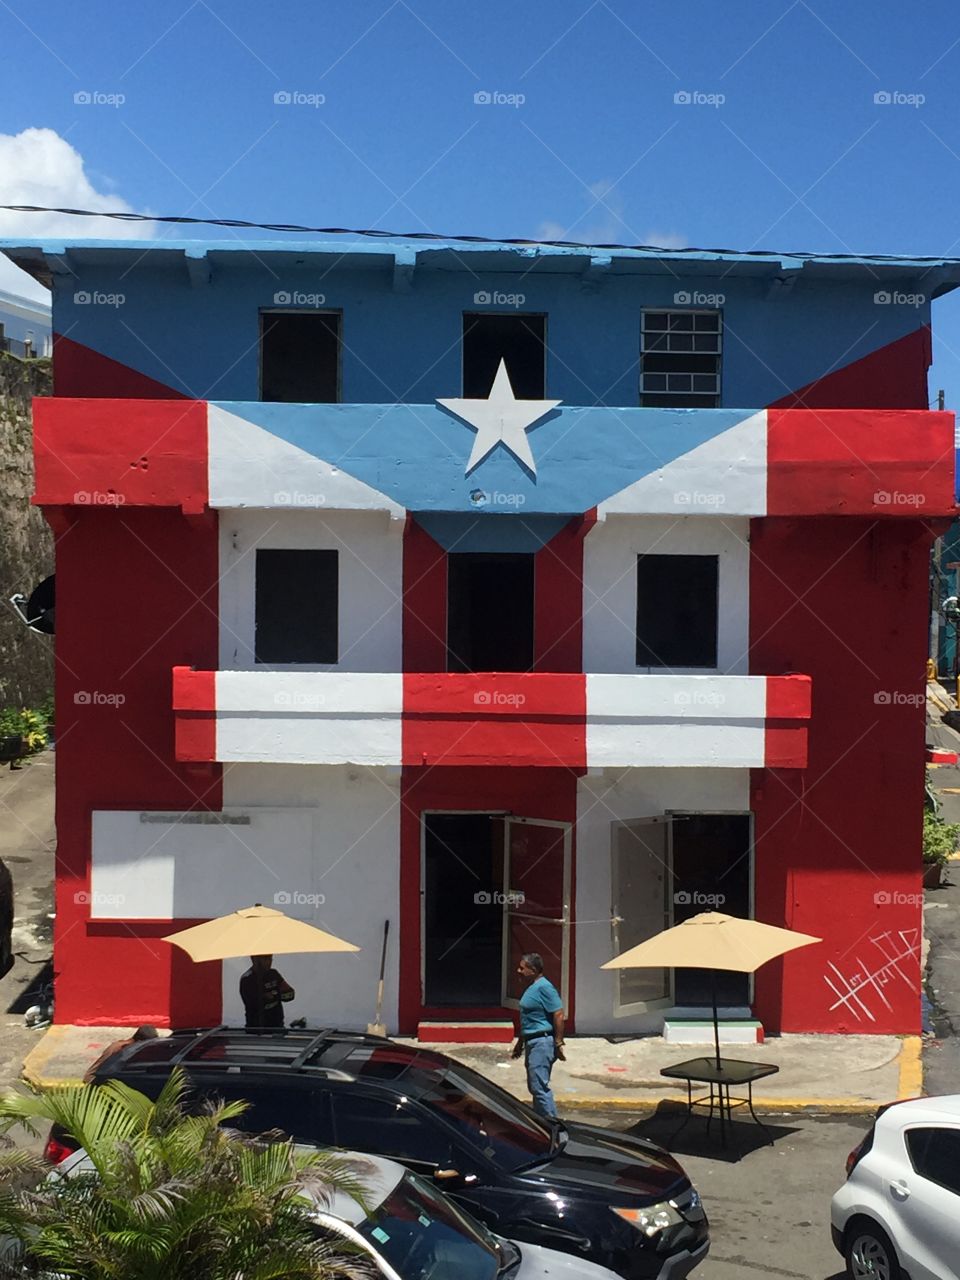 La Perla, San Juan, Puerto Rico 